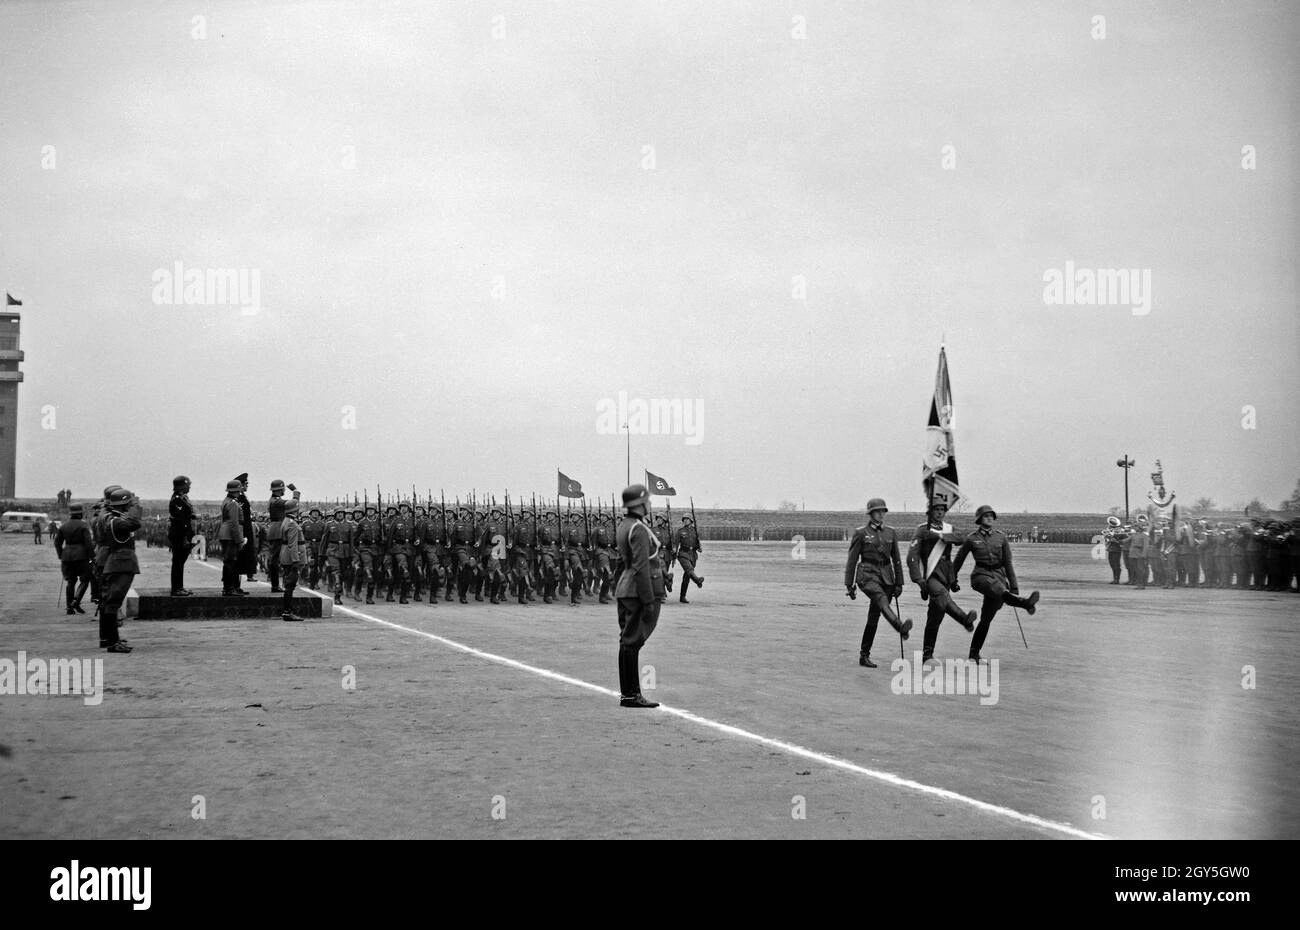 Militärparade im Sokol Stadion in Prag, anlässlich der Geburtstagsfeier von Adolf Hitler, 1930er Jahre. Stockfoto